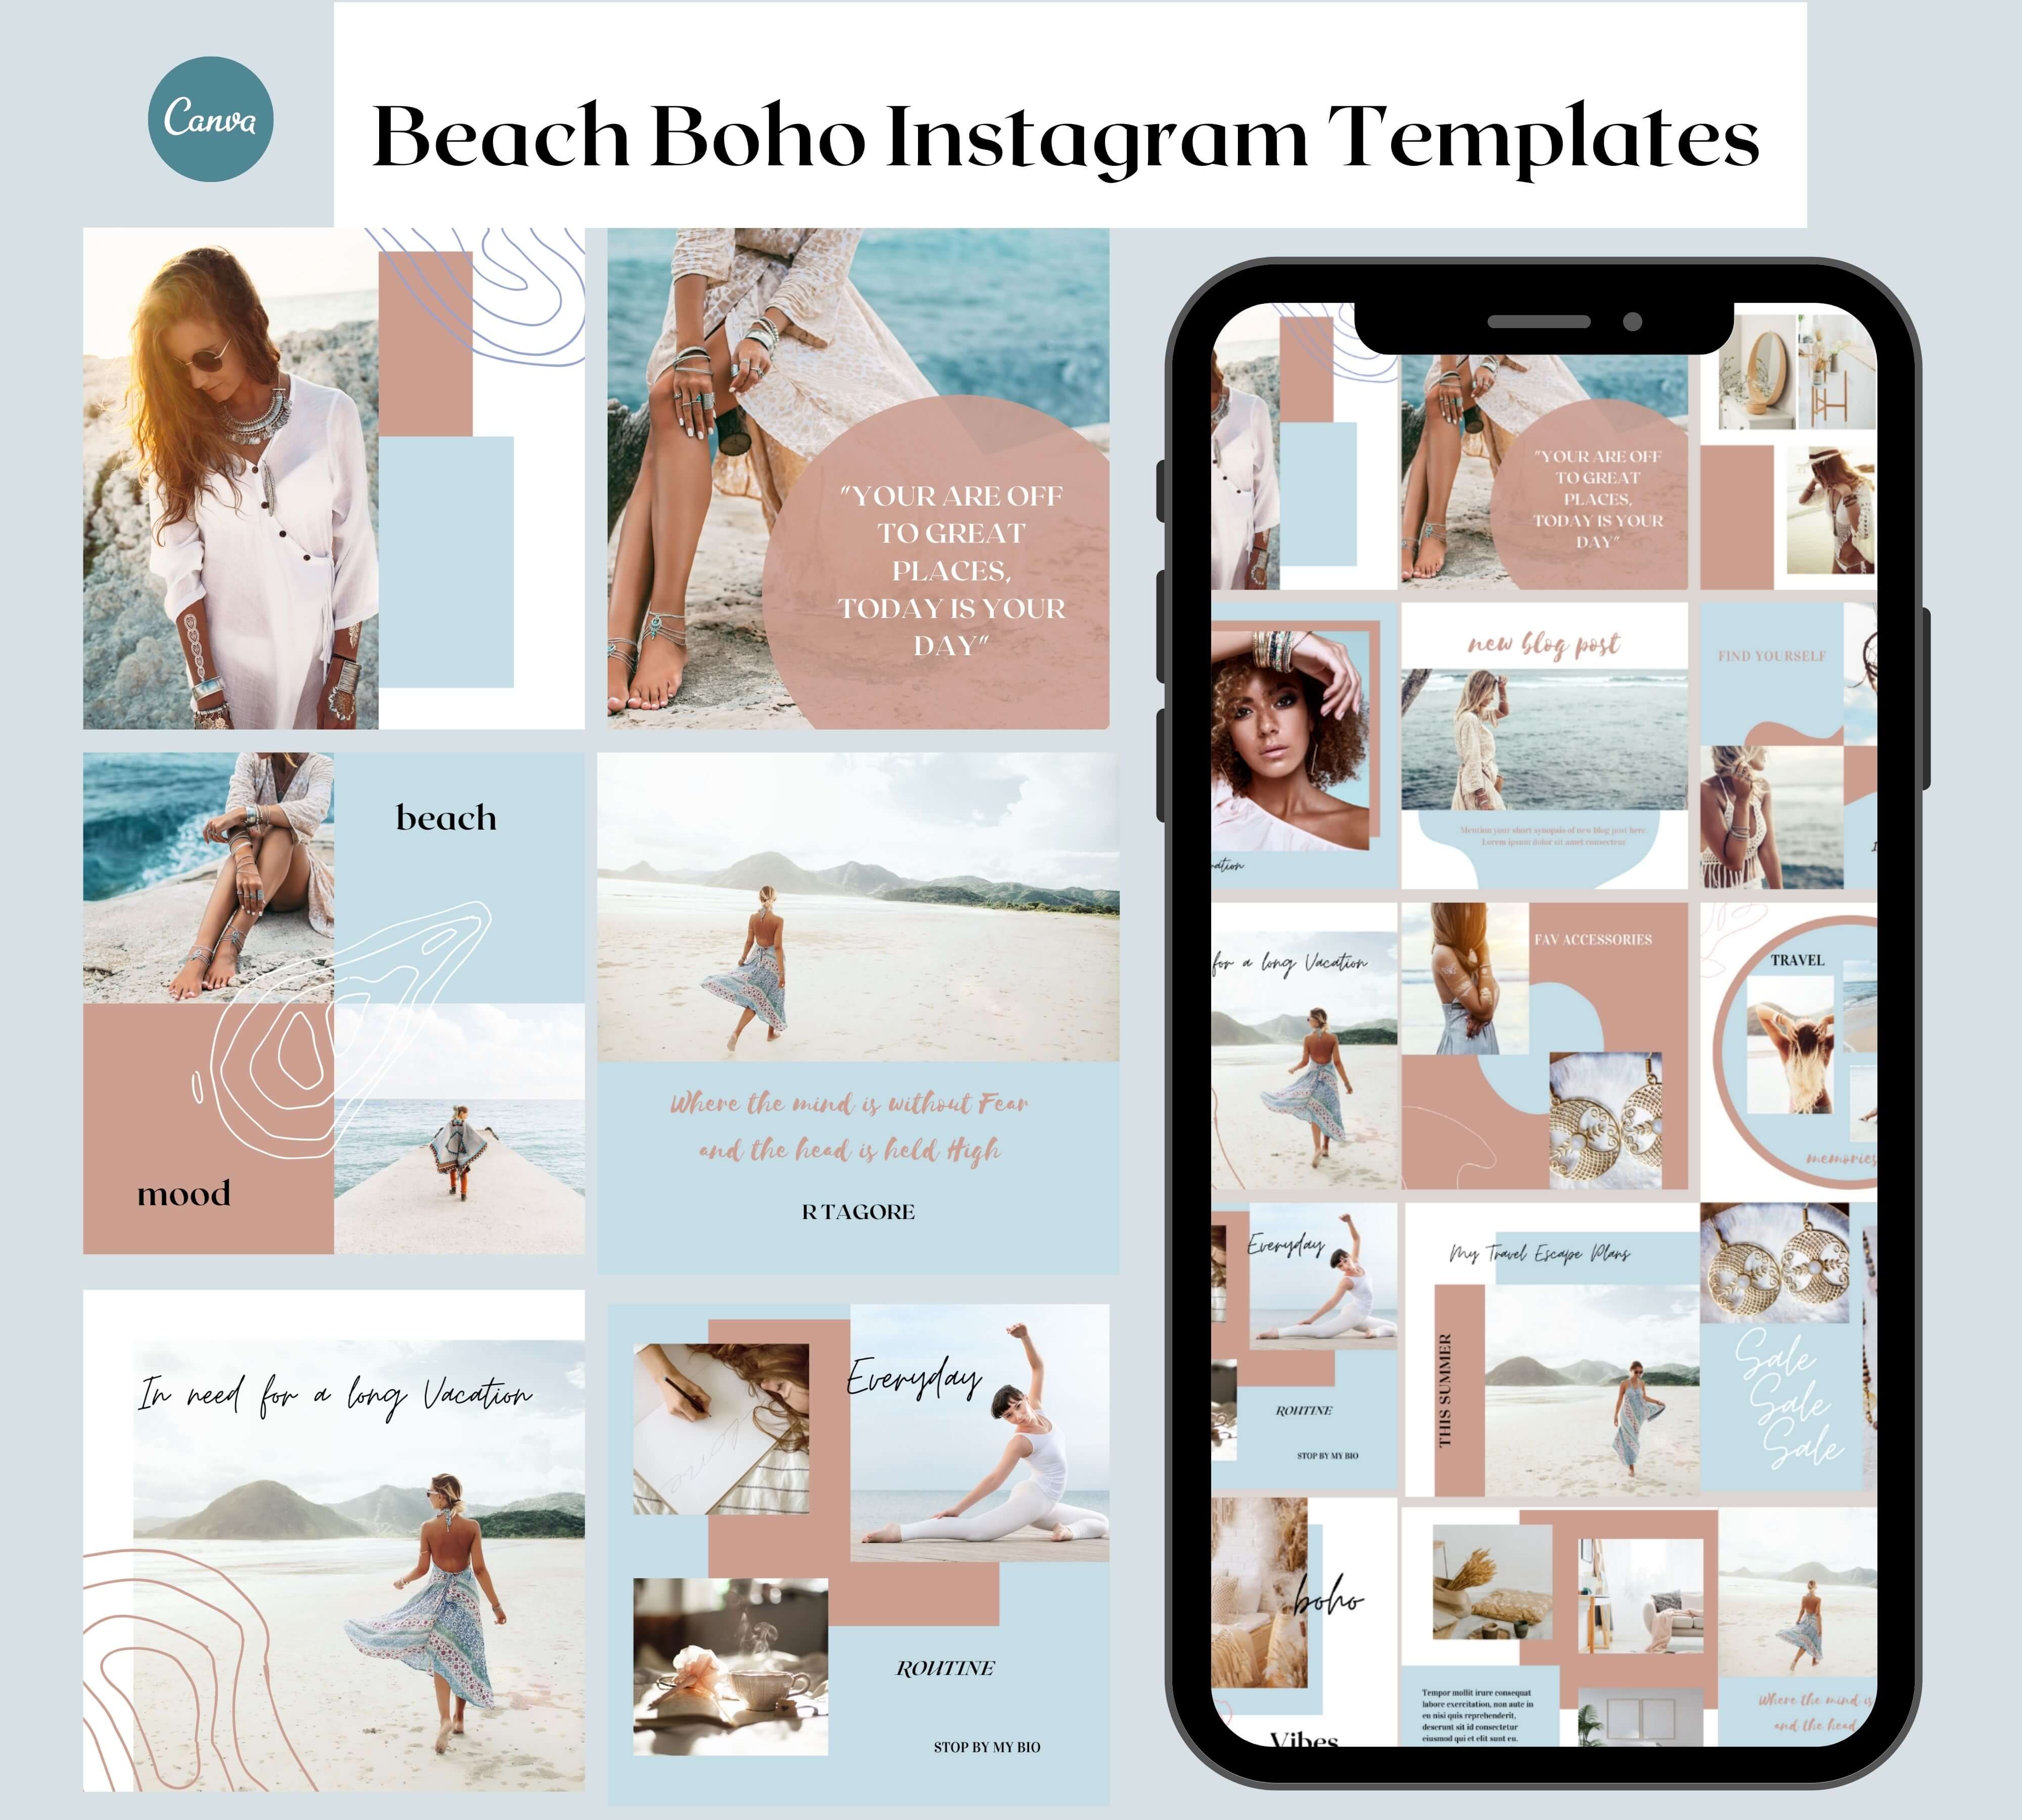 Beach Boho Instagram Templates